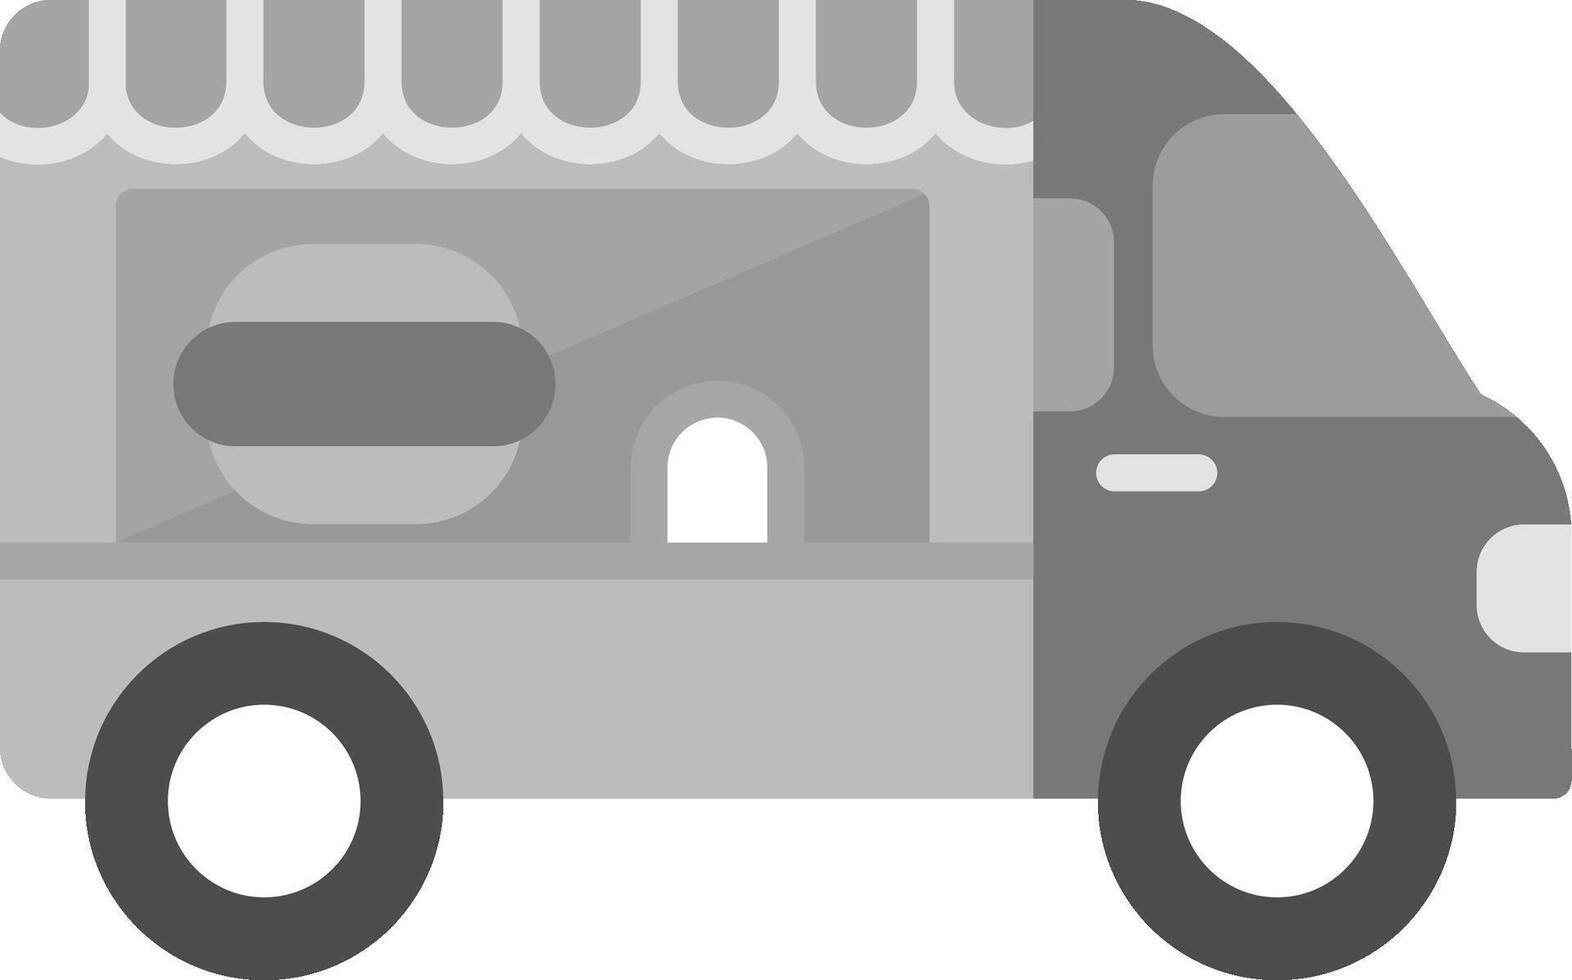 Food Truck Vecto Icon vector